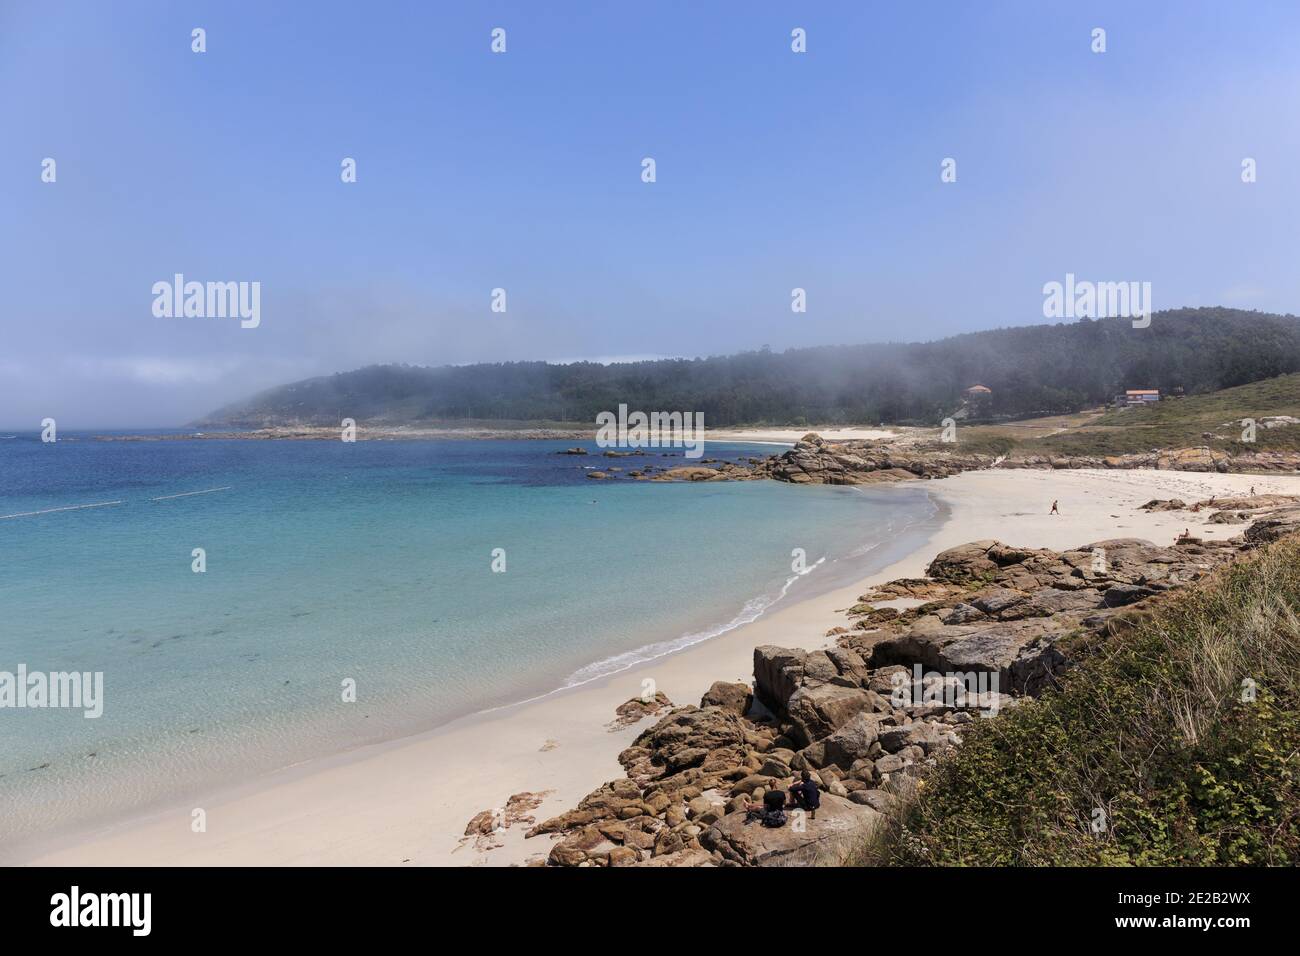 Muxia spiaggia sabbiosa, Costa da morte, la Coruña, Galizia, Spagna Foto Stock